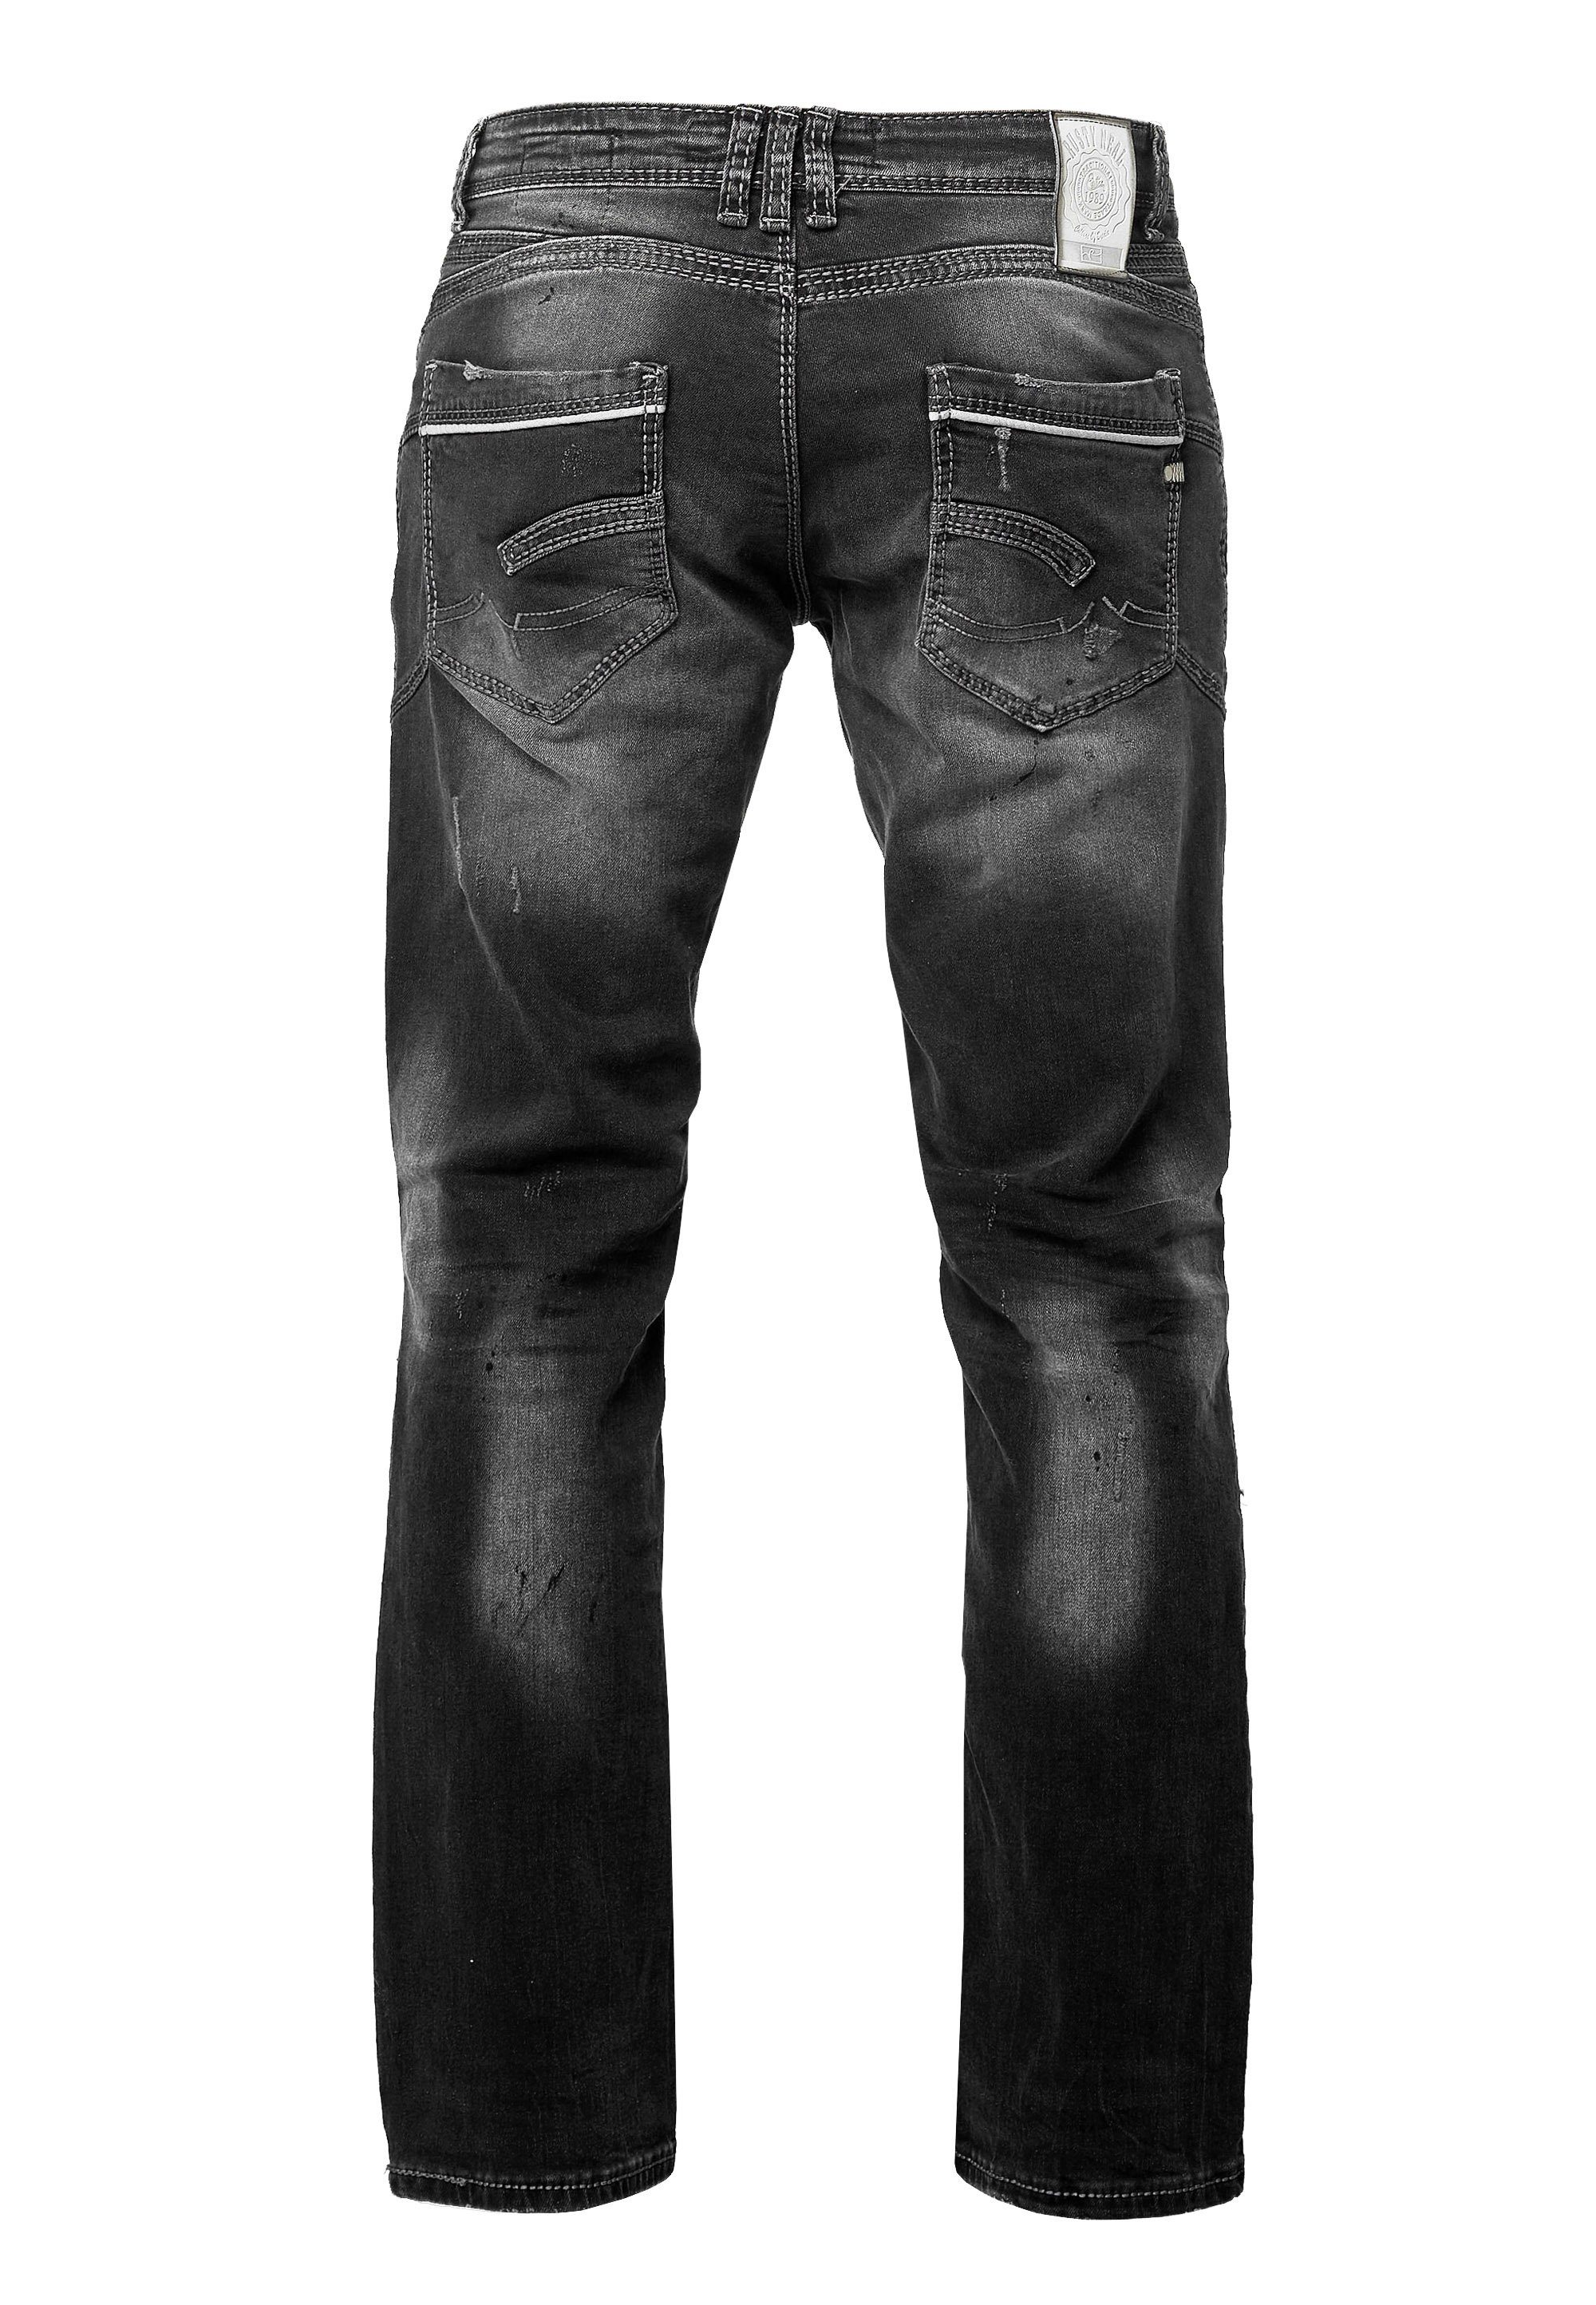 Rusty Neal Straight-Jeans bequemen Straight Fit-Schnitt im